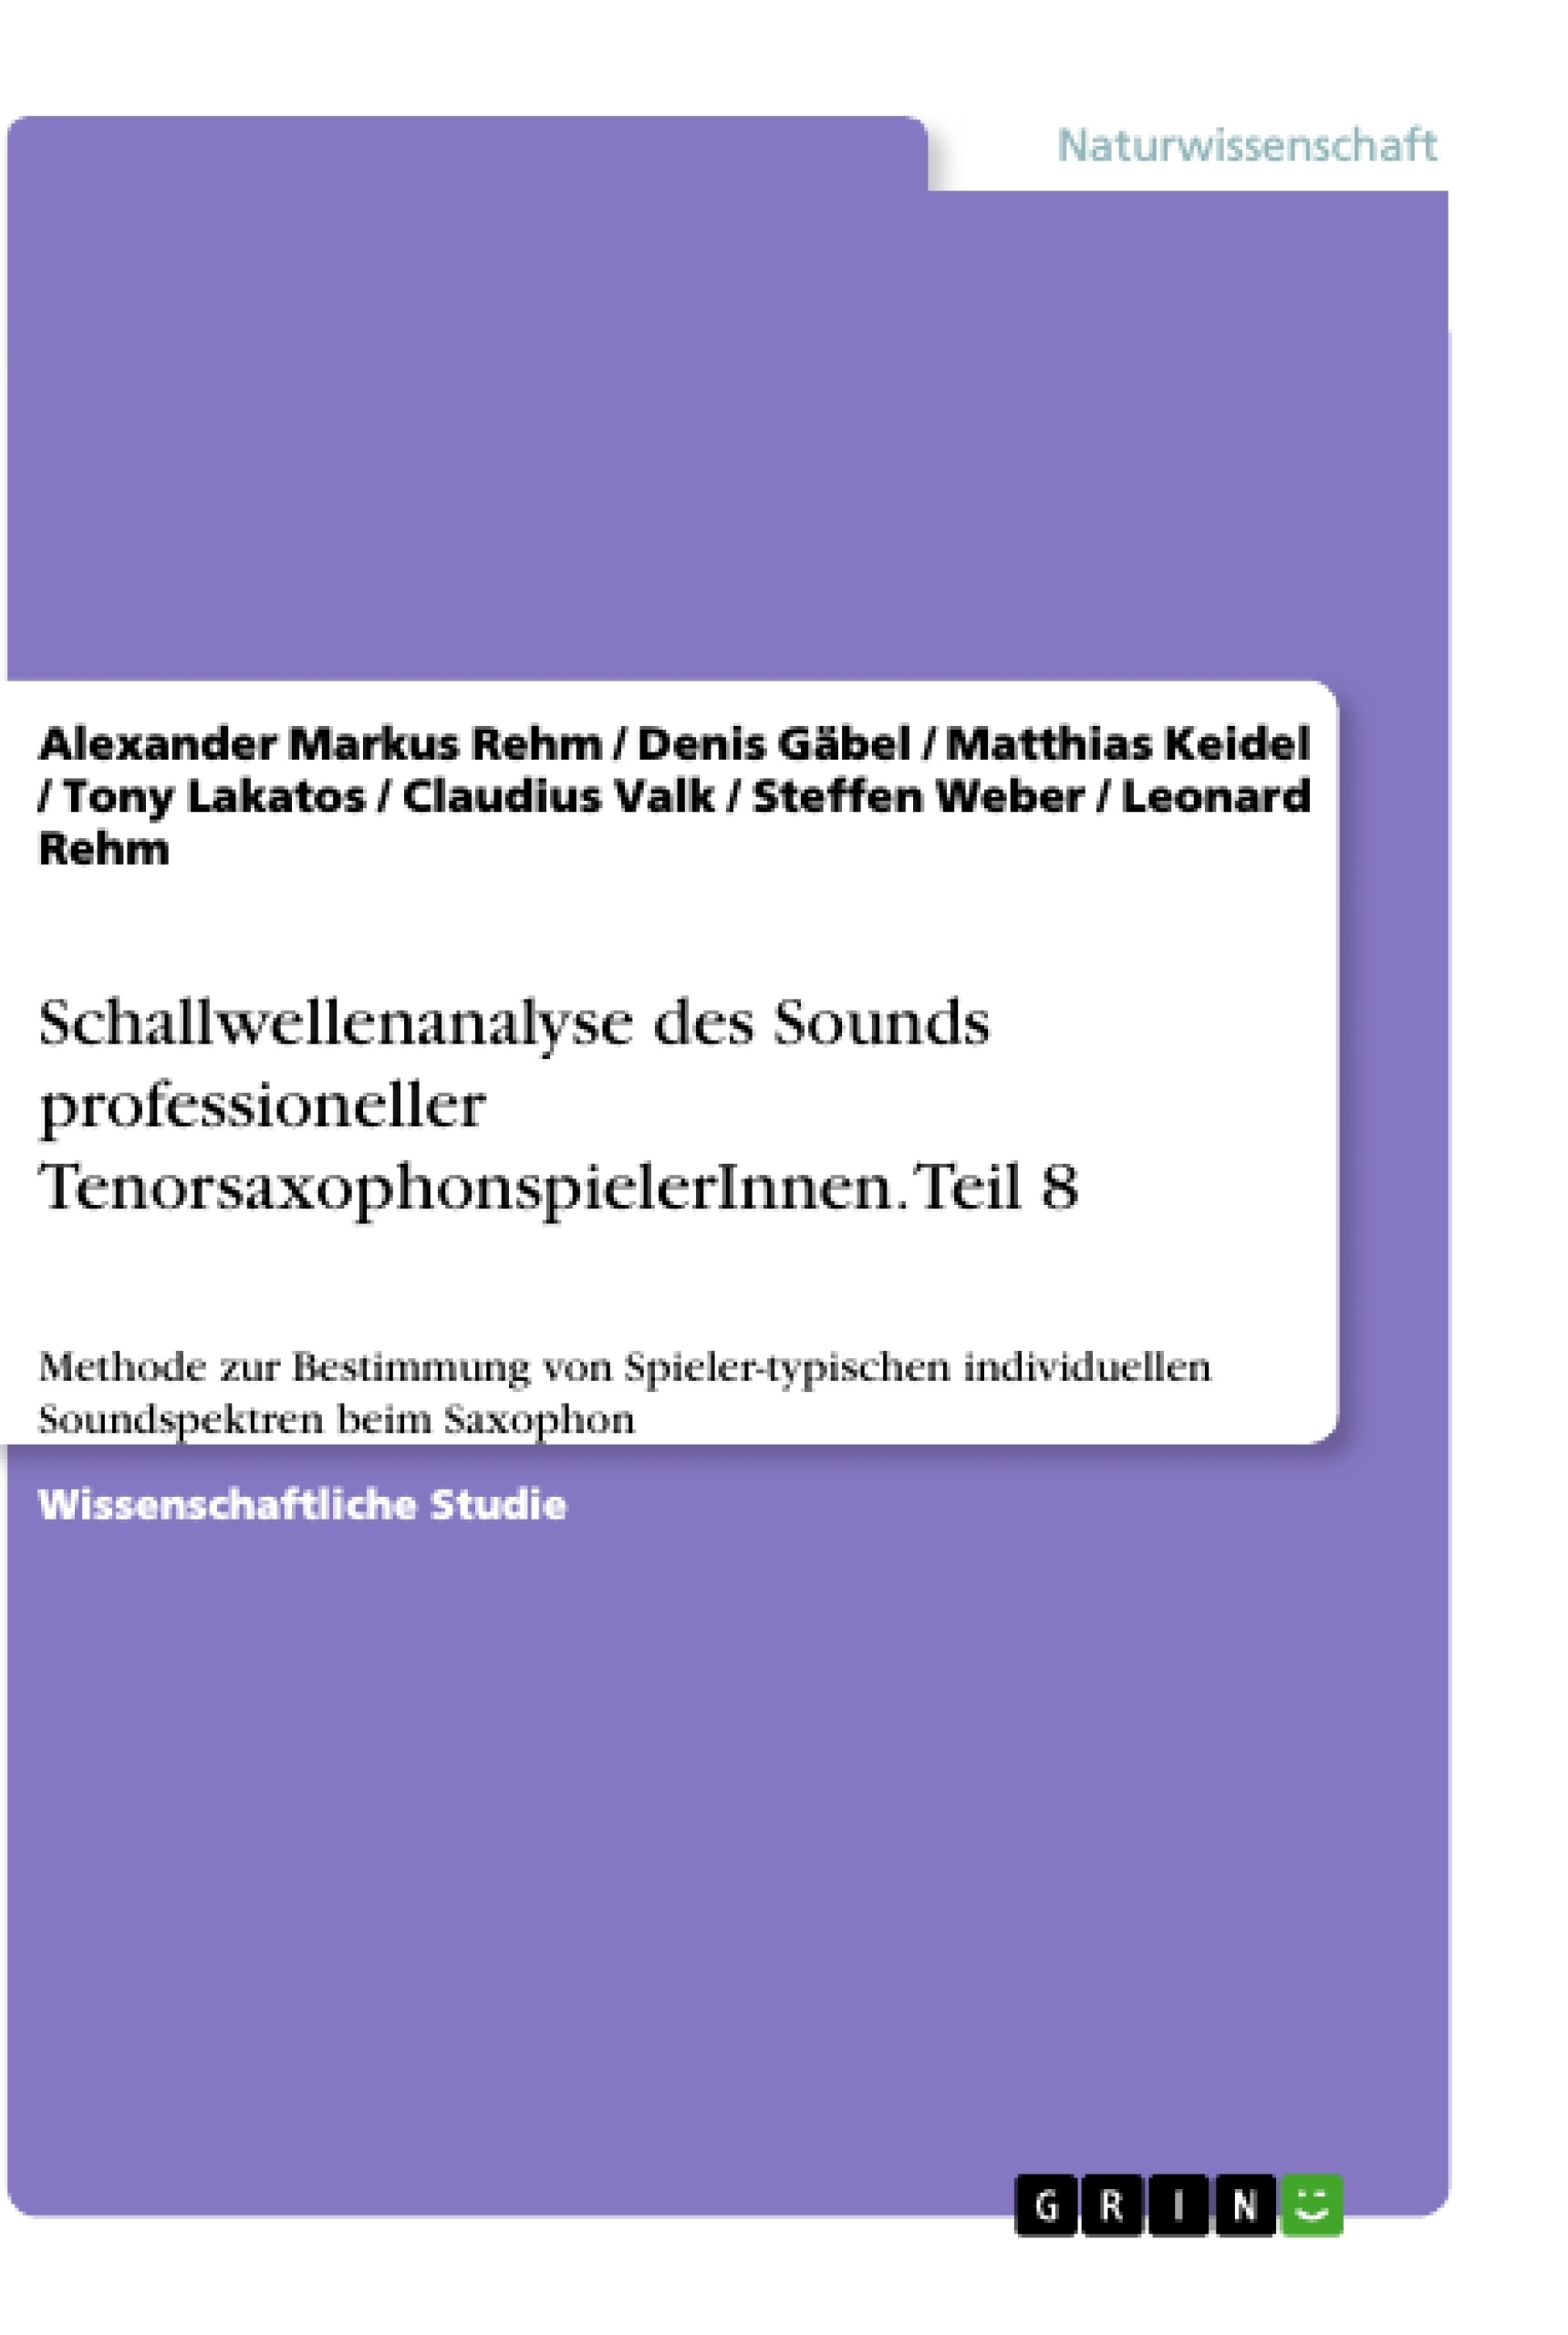 Título: Schallwellenanalyse des Sounds professioneller TenorsaxophonspielerInnen. Teil 8